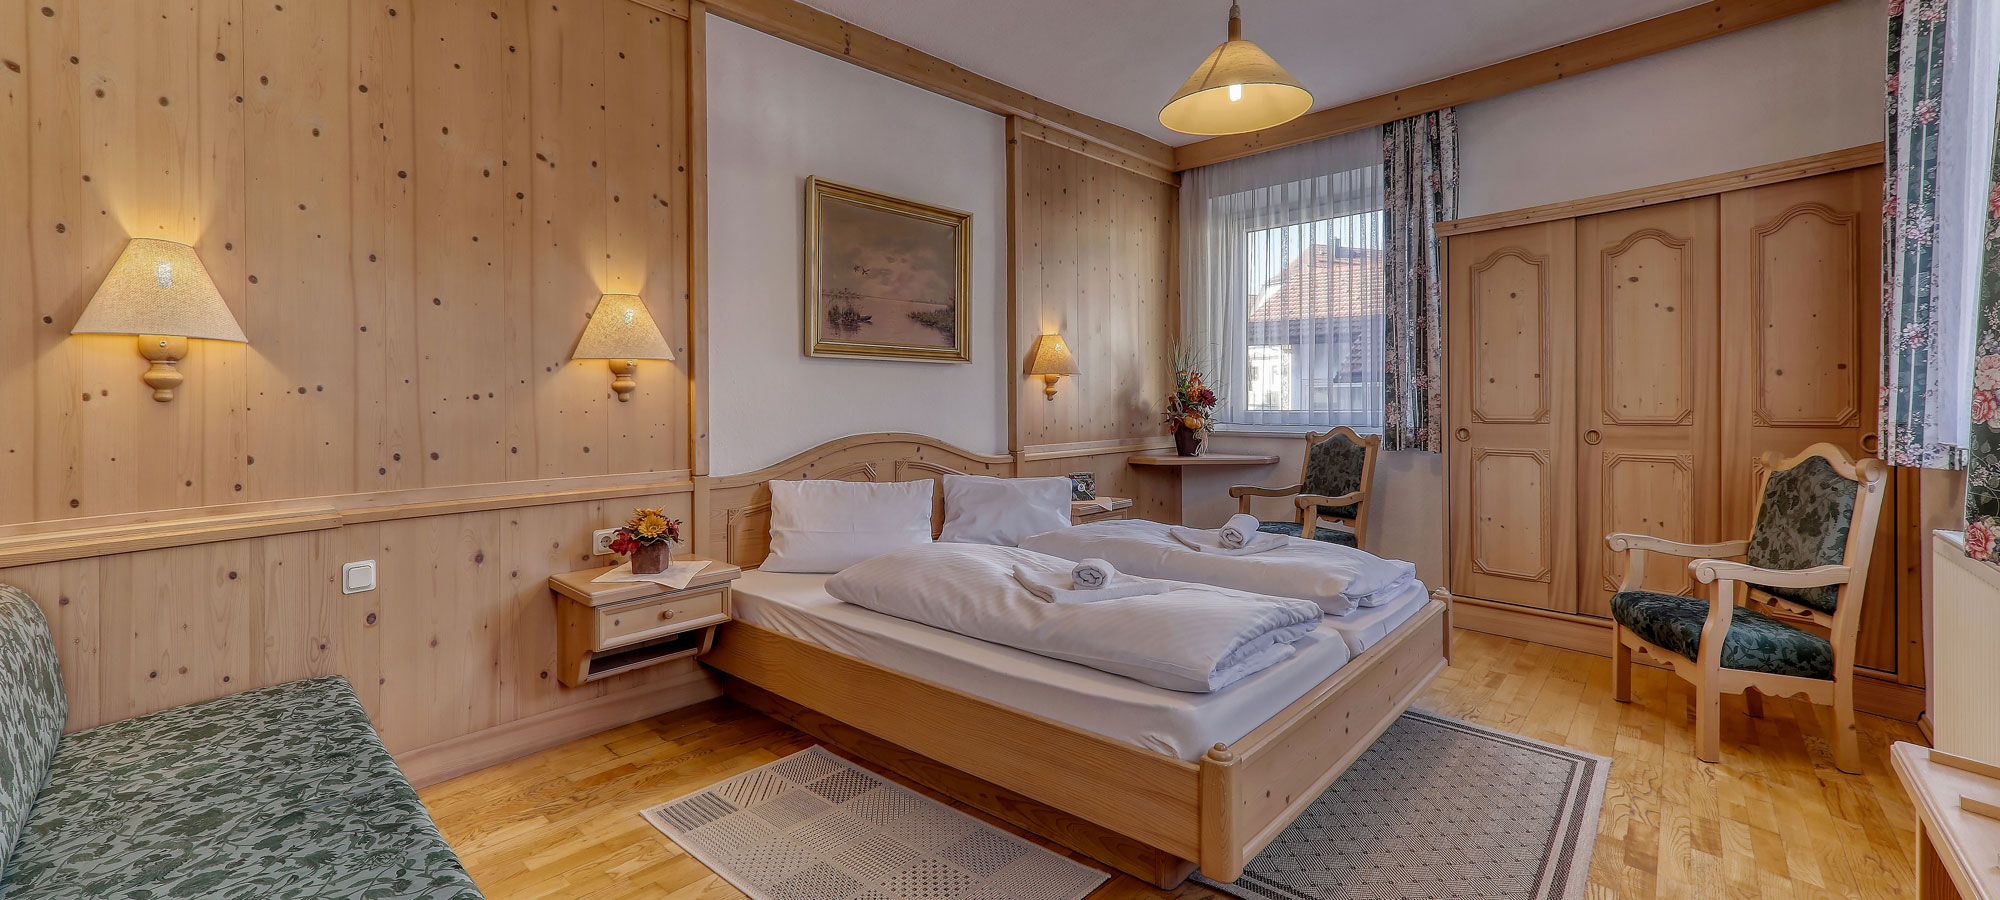 Hotel in Bodenmais Bayerischer Wald